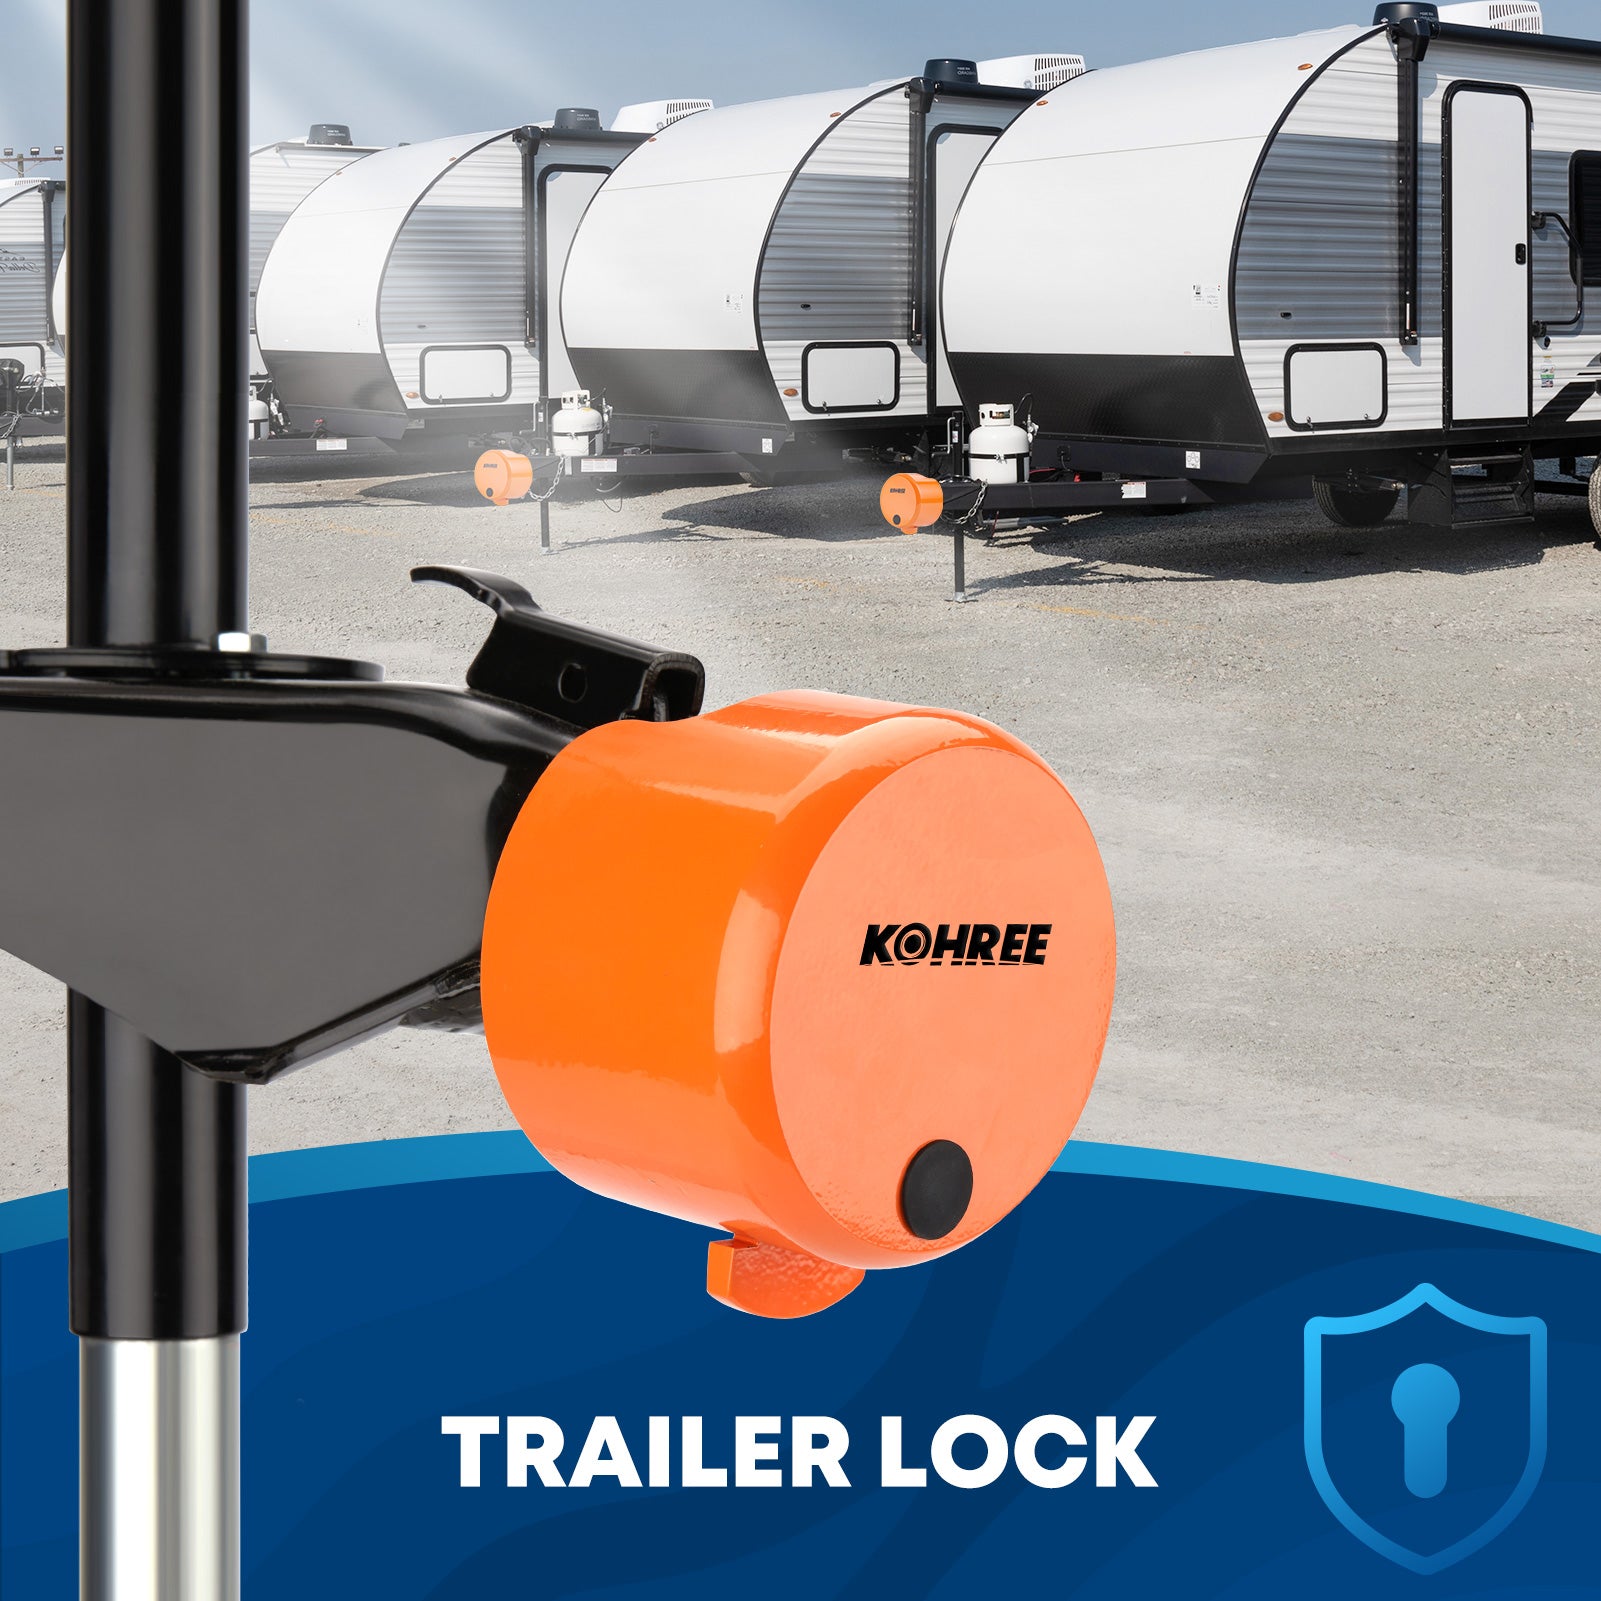 Kohree Trailer Tow Hitch Lock  Heavy Duty Trailer Coupler Lock